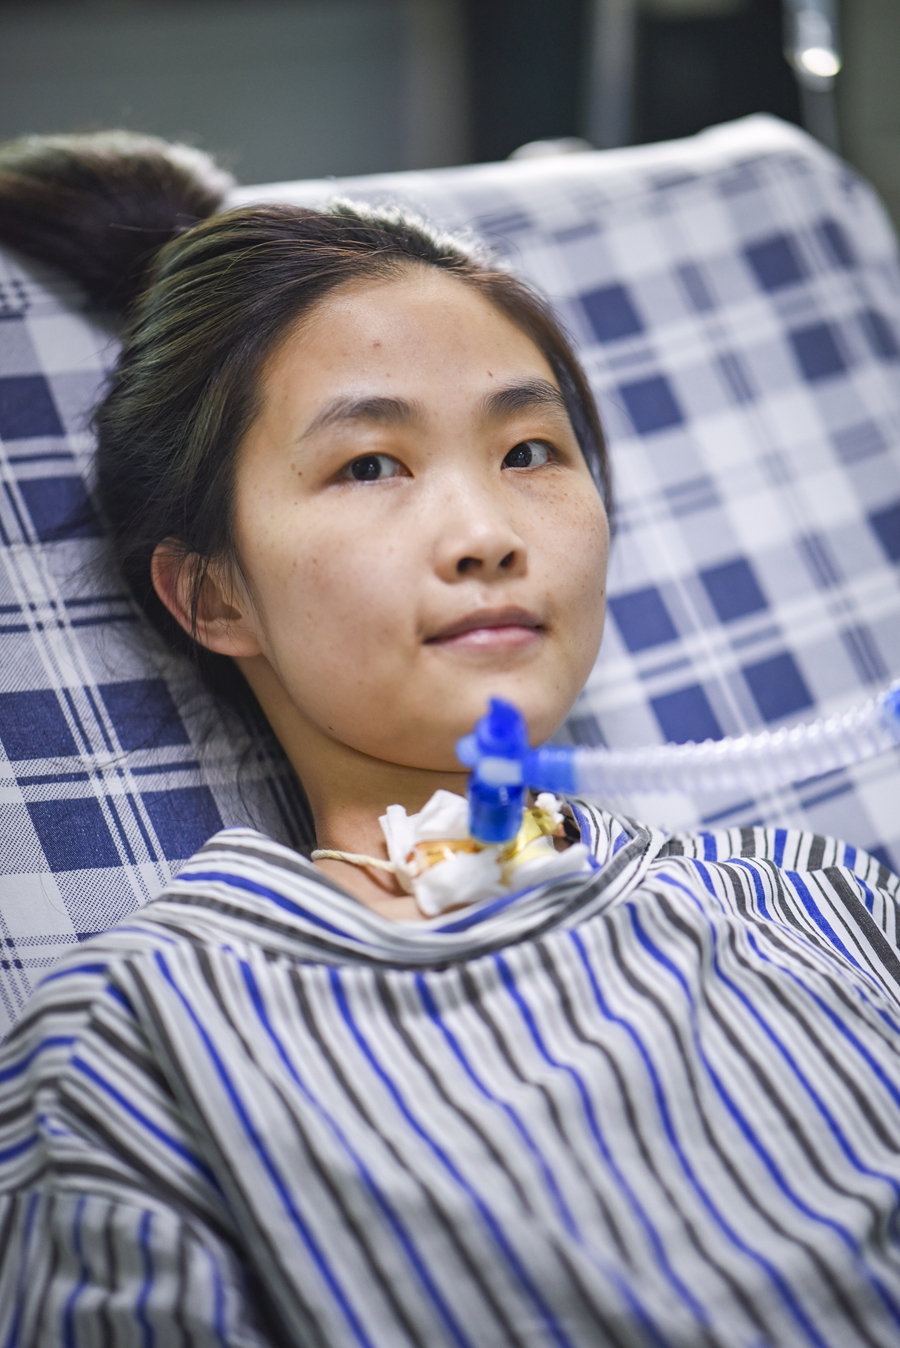 1989年出生的郑宇宁，是广东省第一例“庞贝氏症”患者。在清远市中医院的ICU病房，郑宇宁已经住了十年。由于呼吸衰竭，医生在郑宇宁的喉咙处切开，插入了一个吸管来连接呼吸机。目前郑宇宁必须依靠呼吸机维持生命。 金羊网记者 宋金峪 摄于 2018年5月26日
